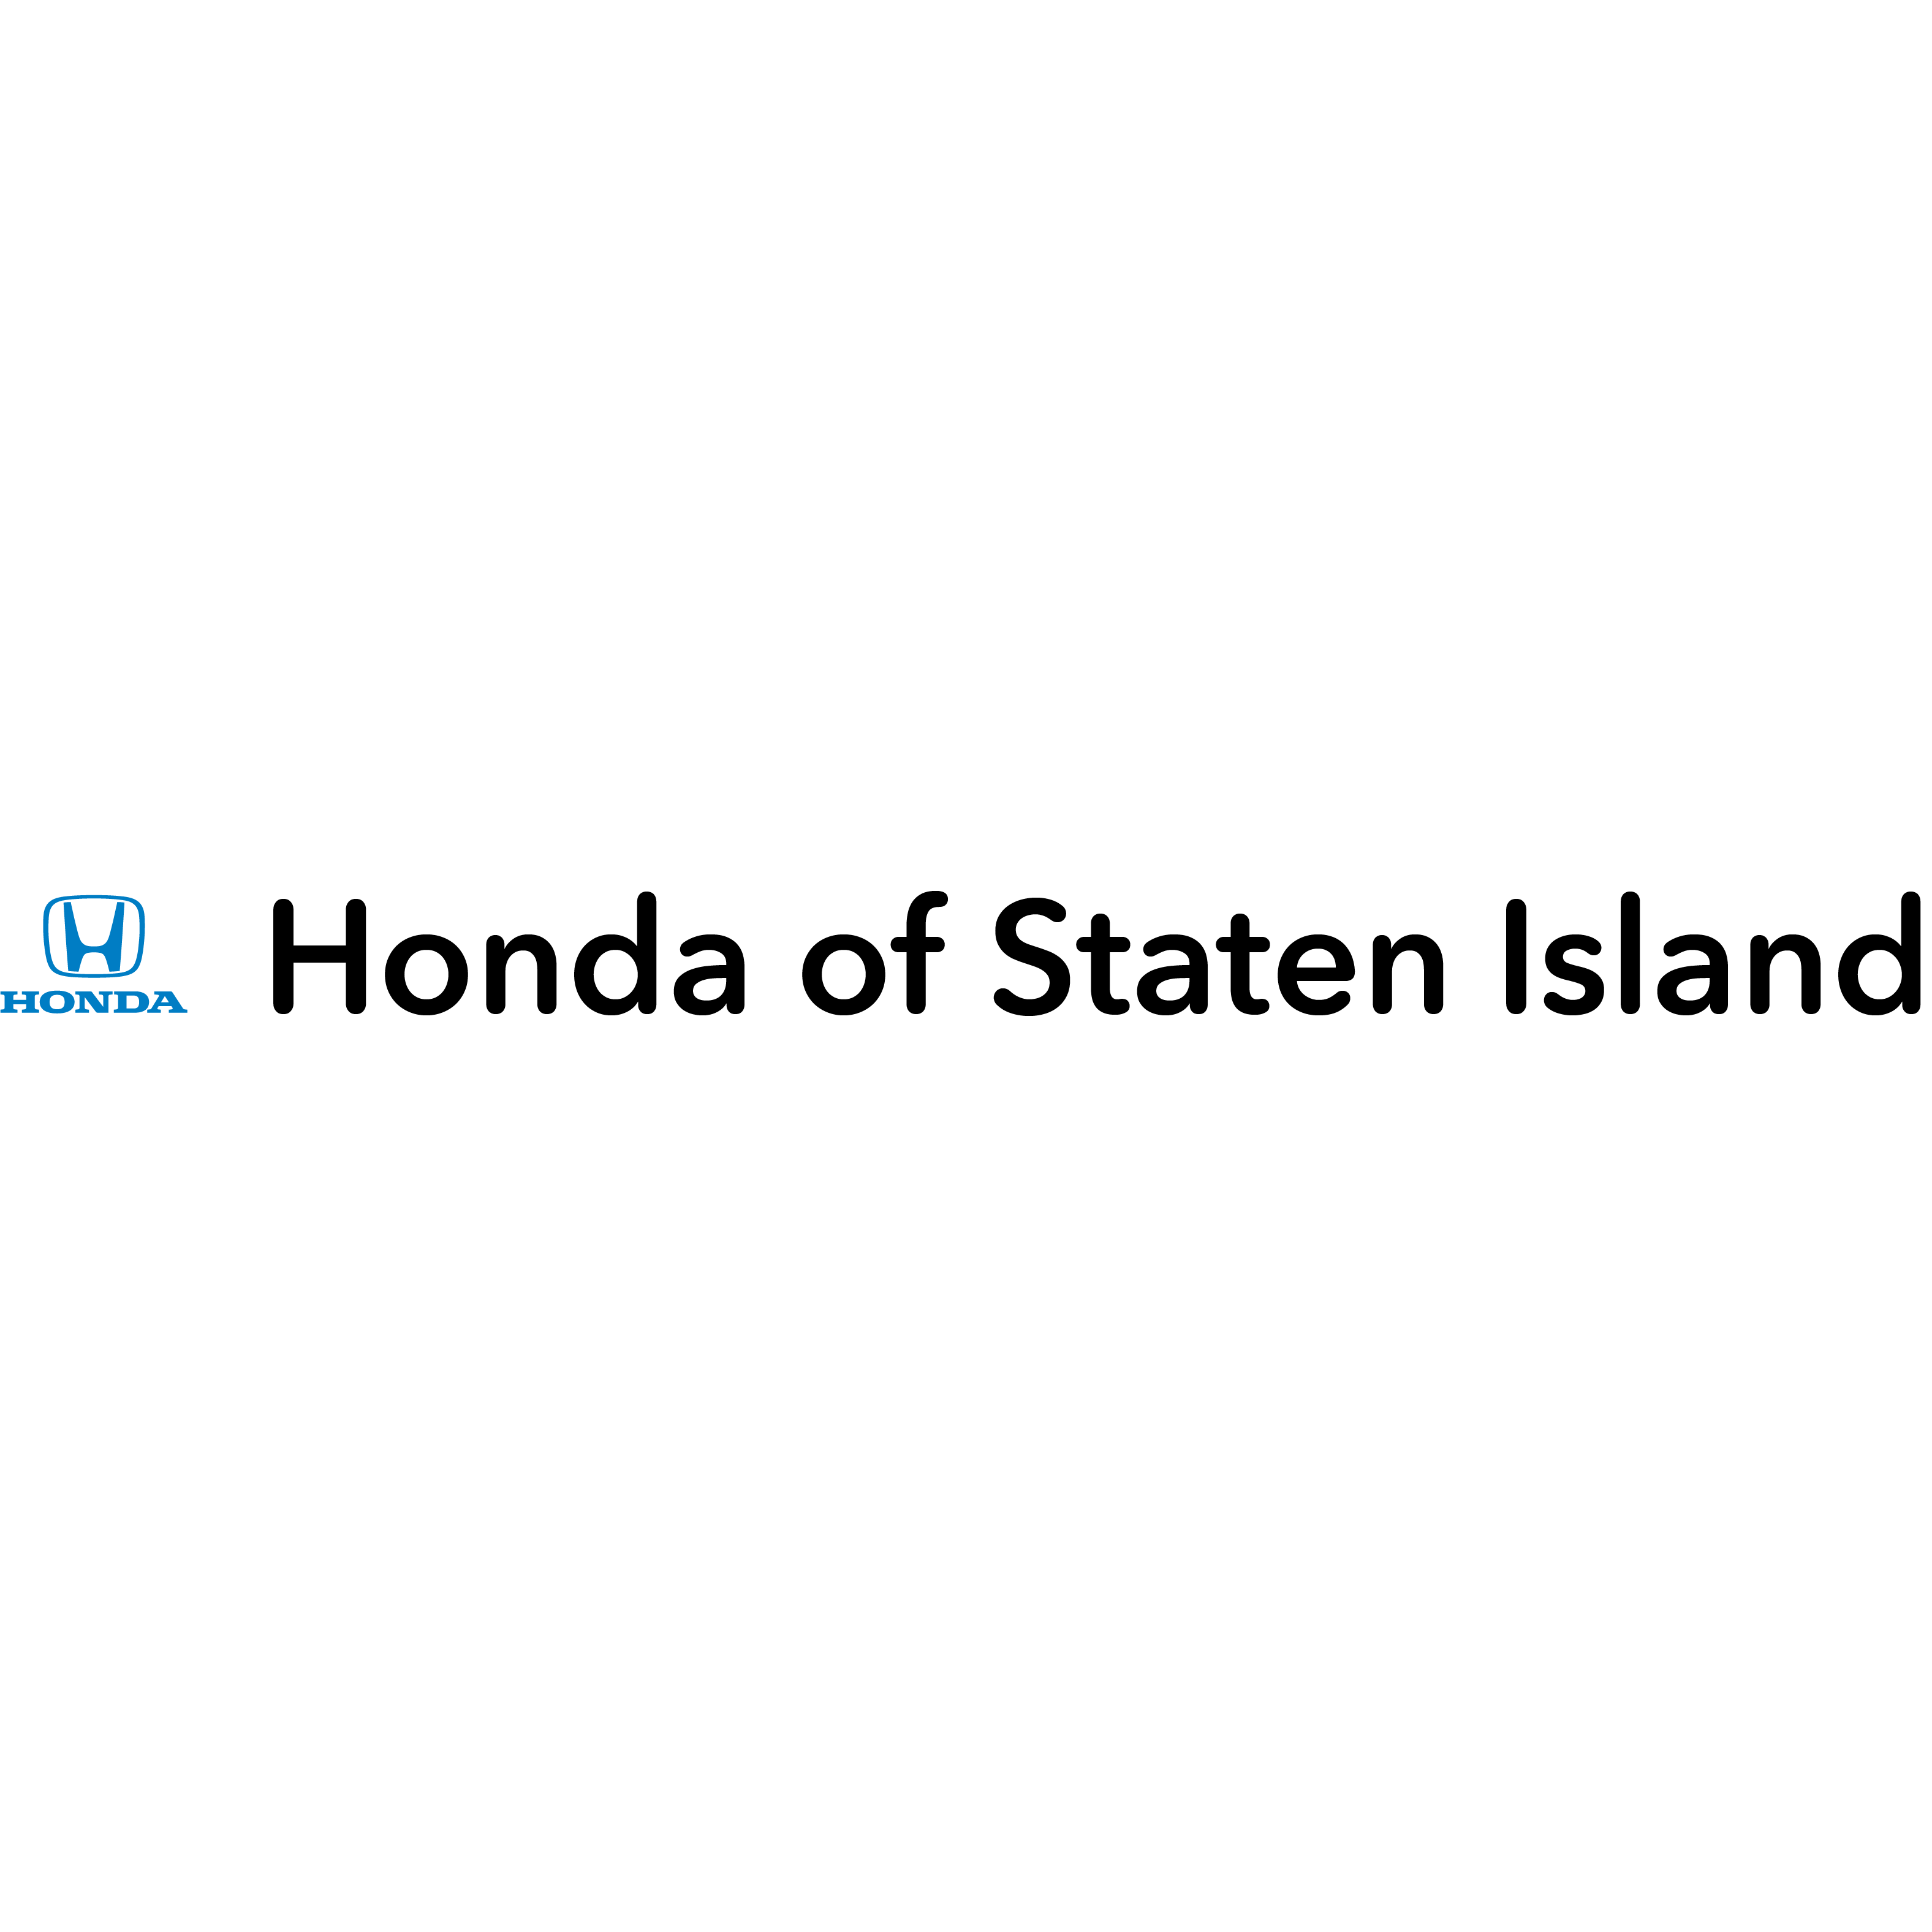 Honda of Staten Island